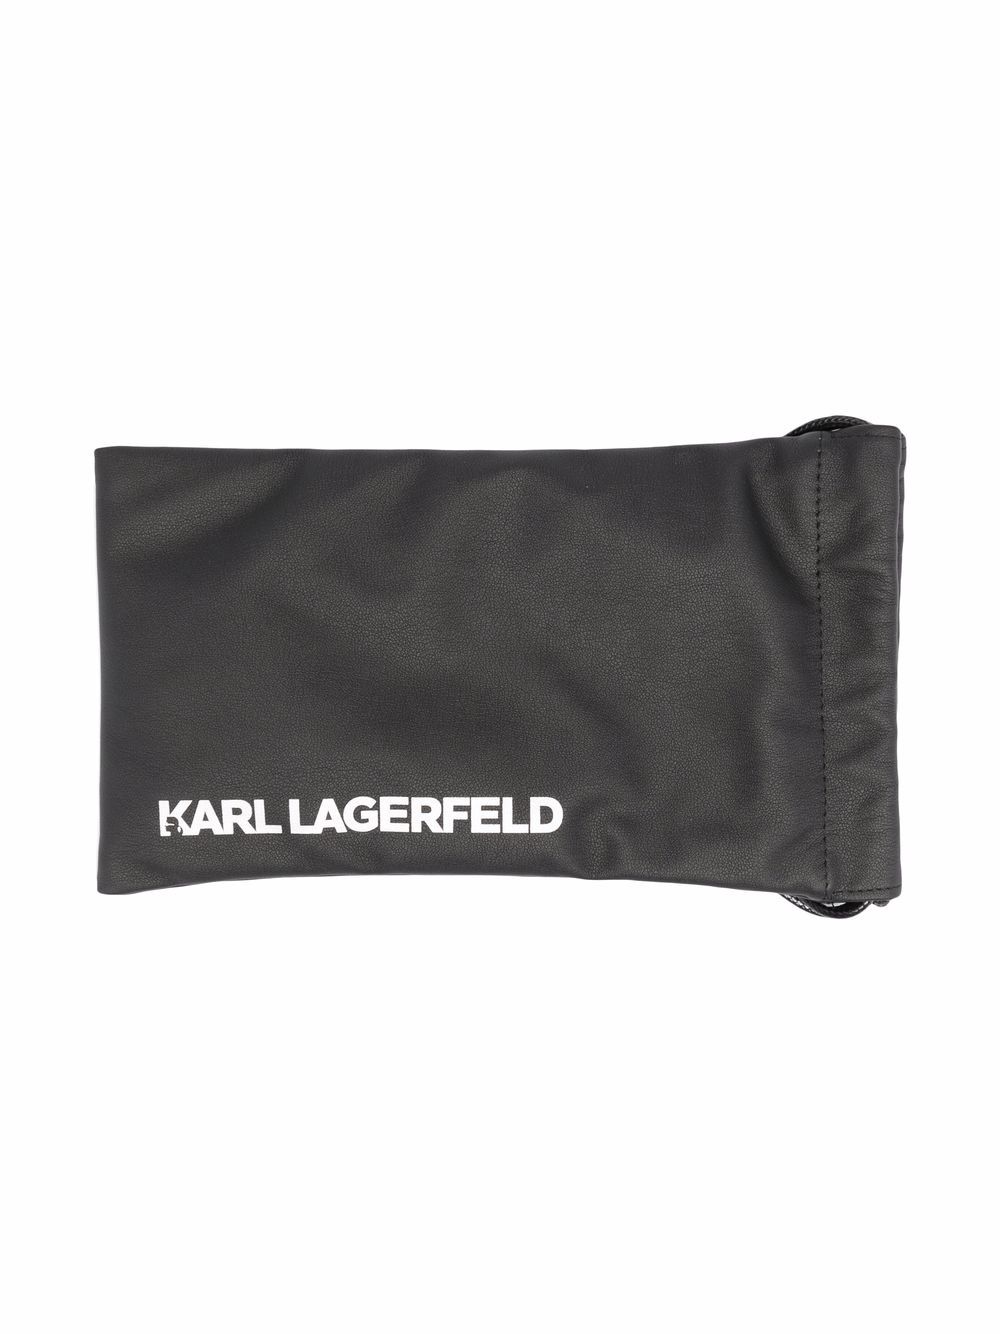 фото Karl lagerfeld солнцезащитные очки rue st-guillaume mask